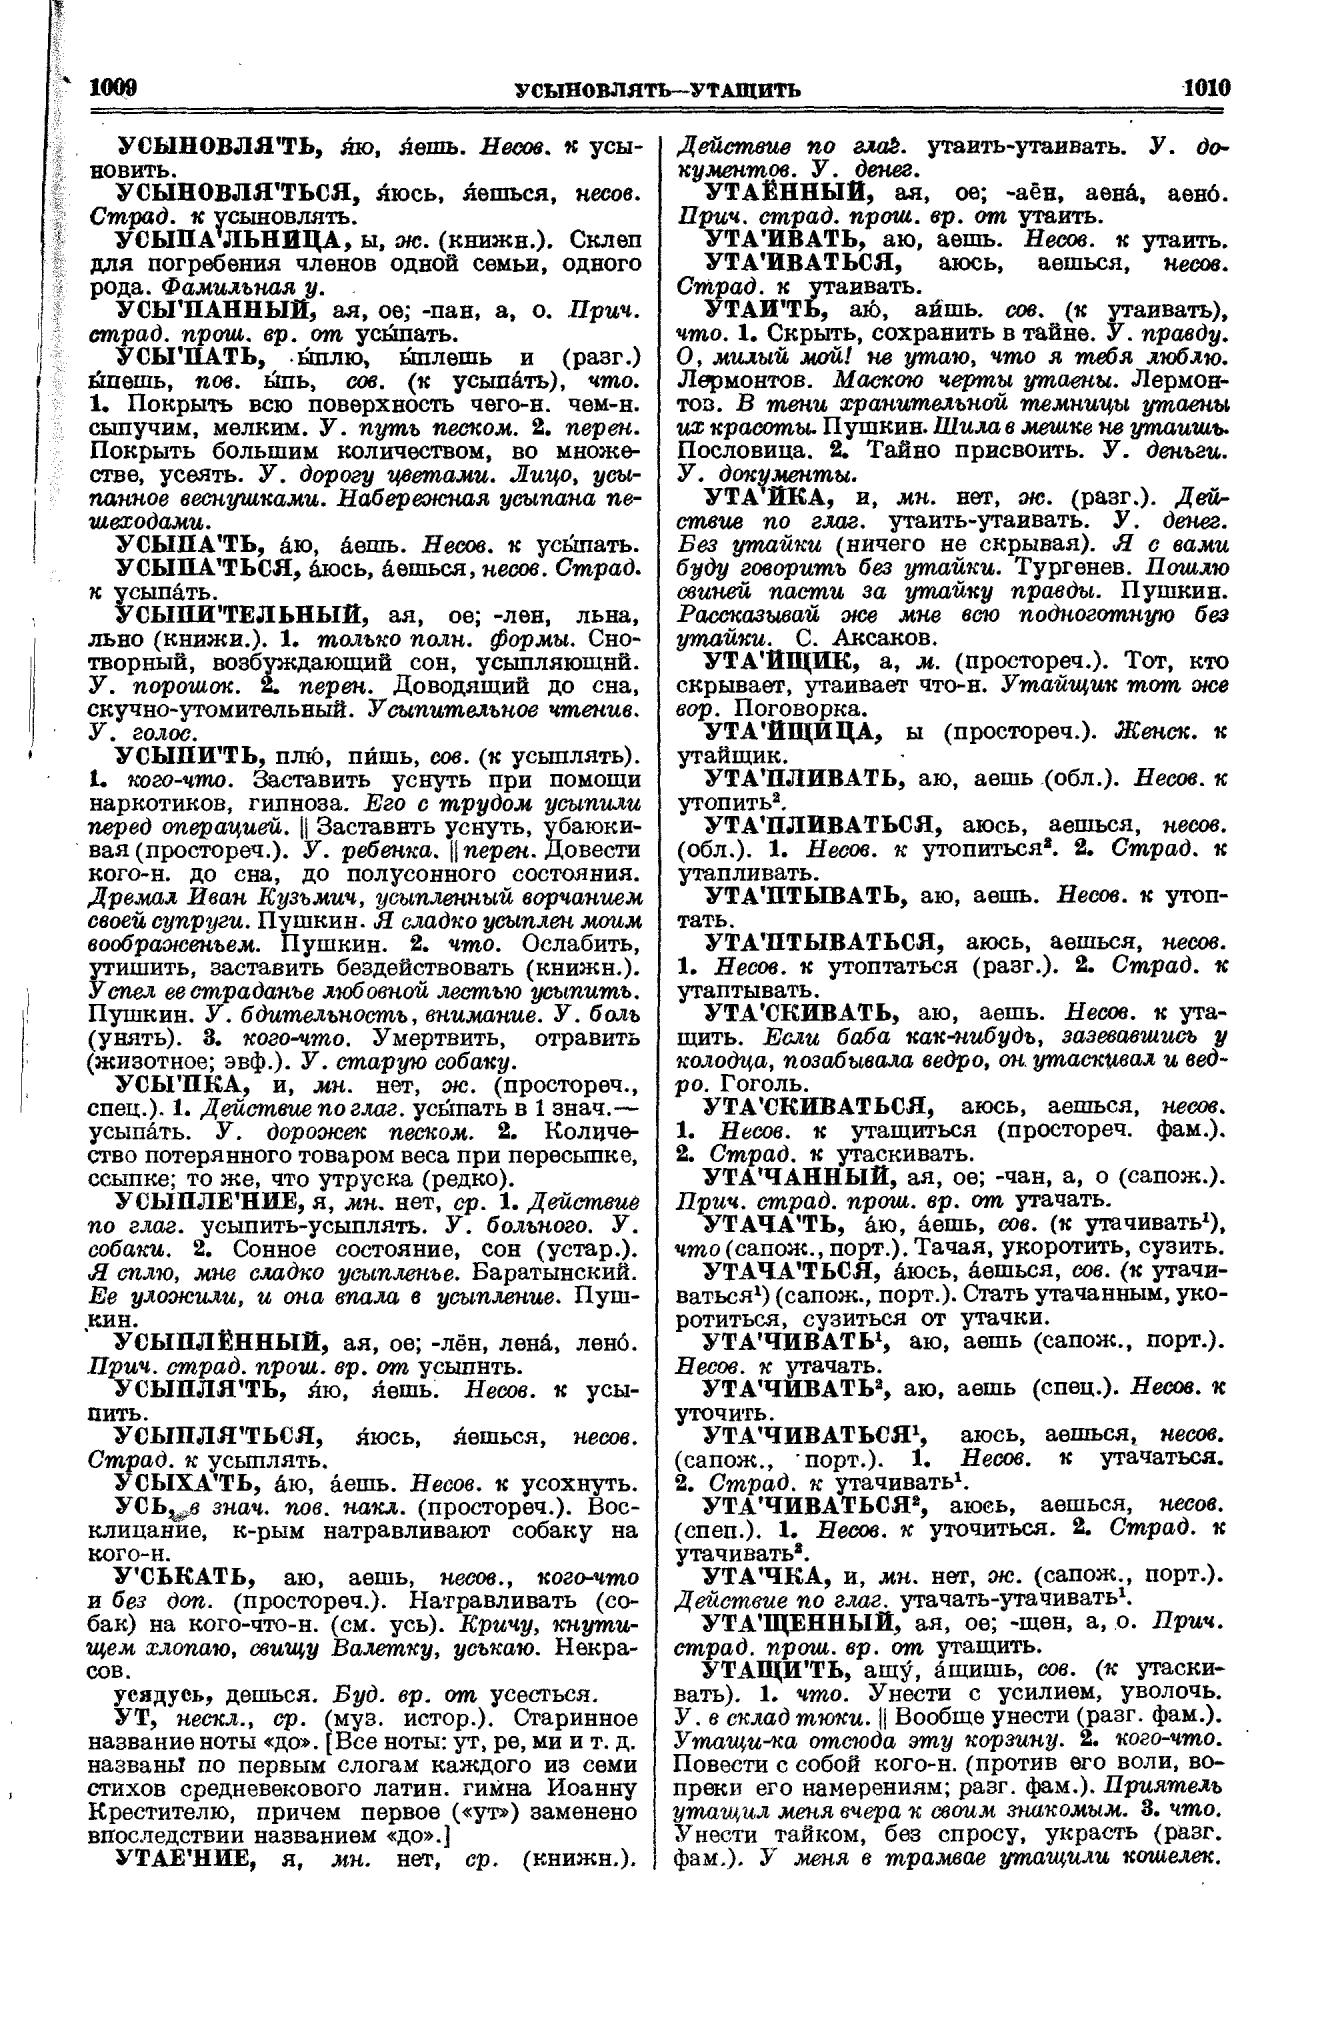 Сканированная страница толкового словаря Ушакова